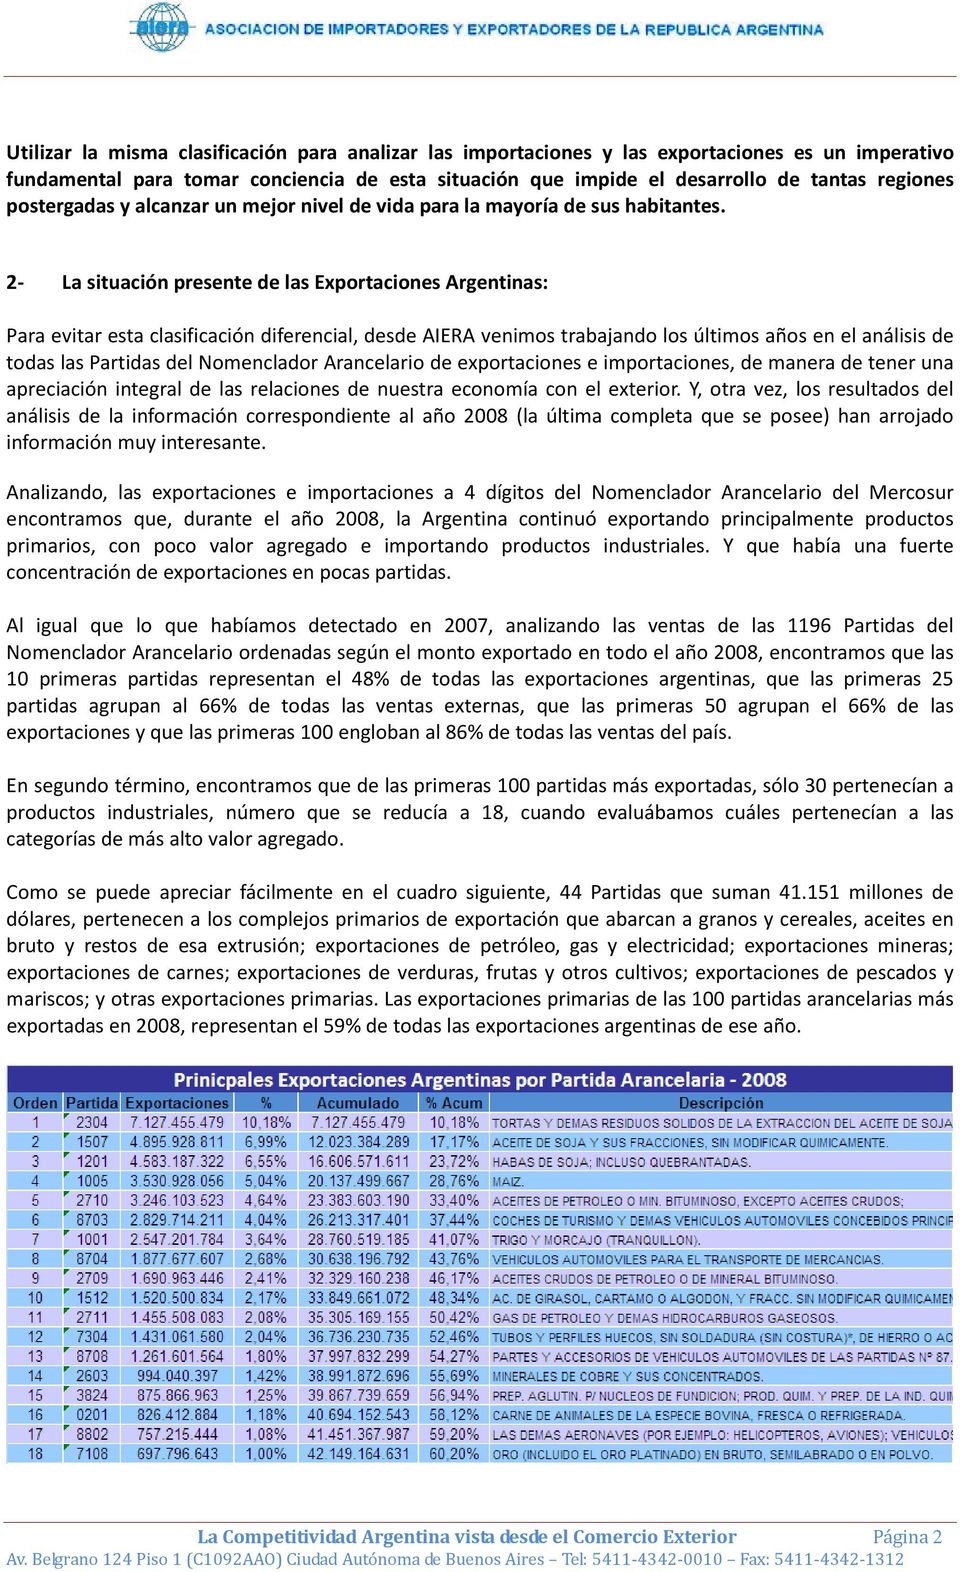 2- La situación presente de las Exportaciones Argentinas: Para evitar esta clasificación diferencial, desde AIERA venimos trabajando los últimos años en el análisis de todas las Partidas del